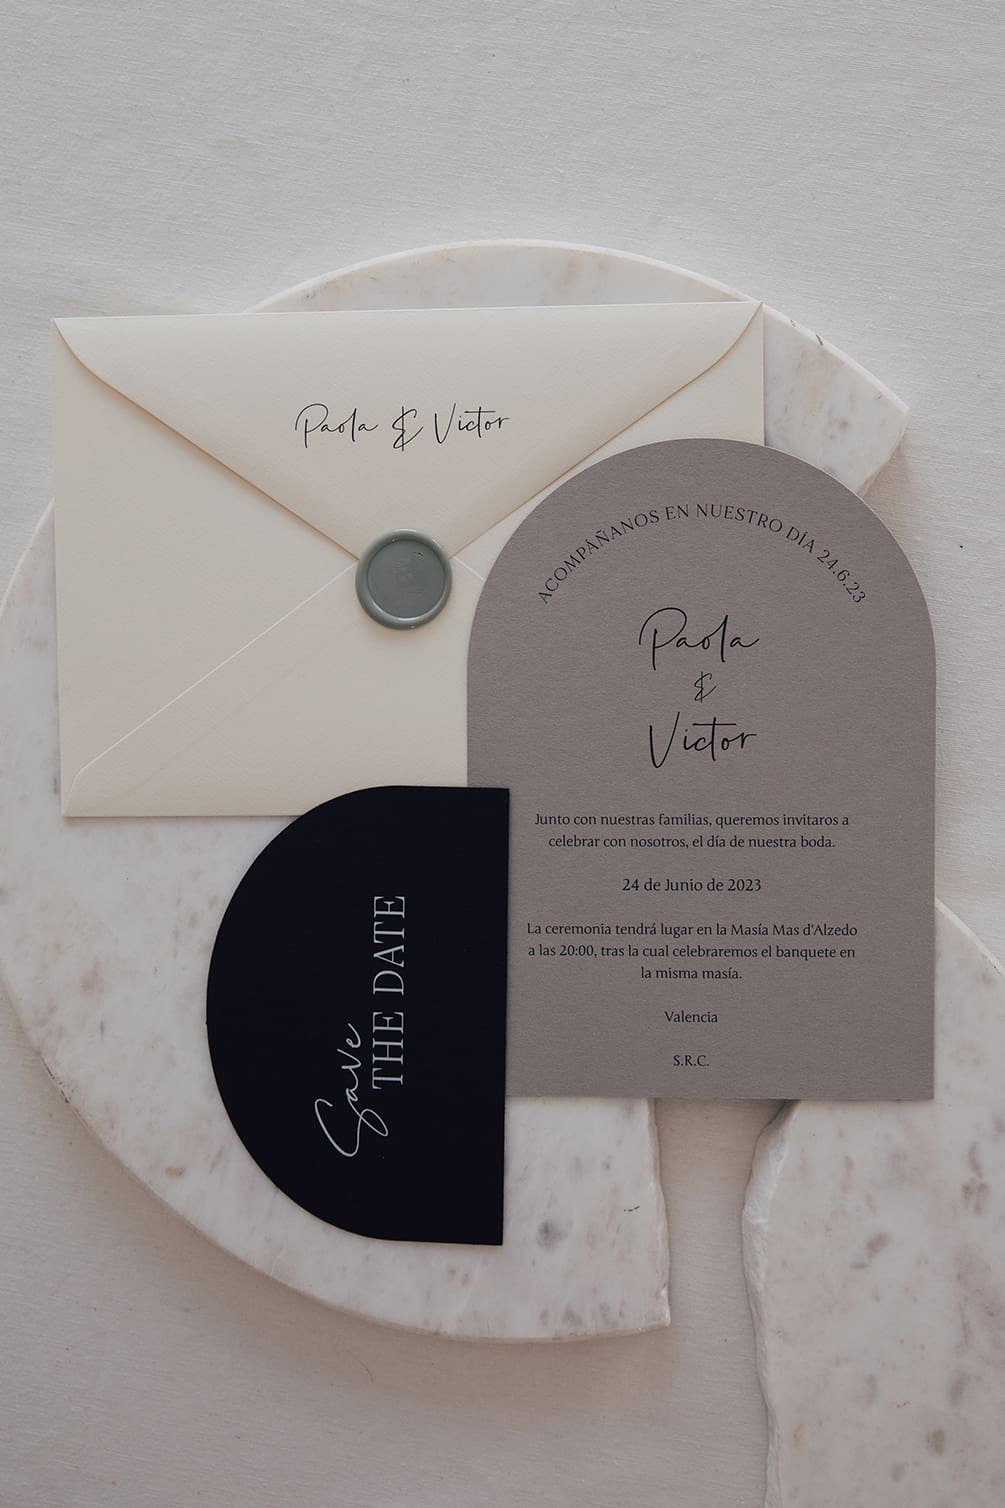 Colección completa 'arch' de papelería de boda de Bouclé Weddings, expertos wedding planners, apoyada en mármol blanco roto, con diseño único y estética cuidada.